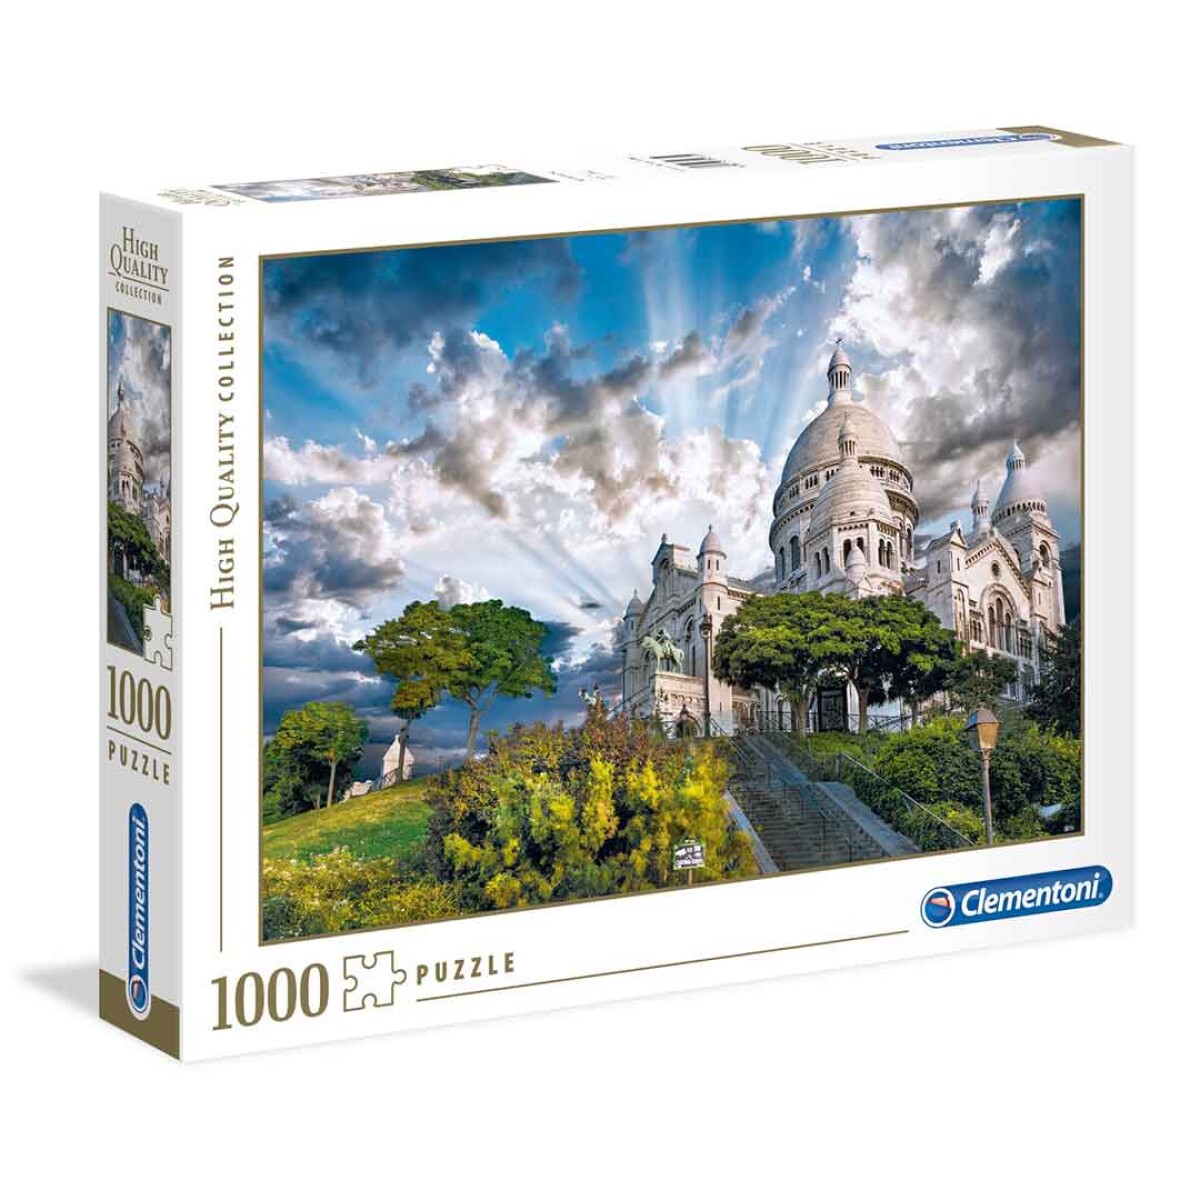 Puzzle Clementoni 1000 piezas Montmartre High Quality - 001 